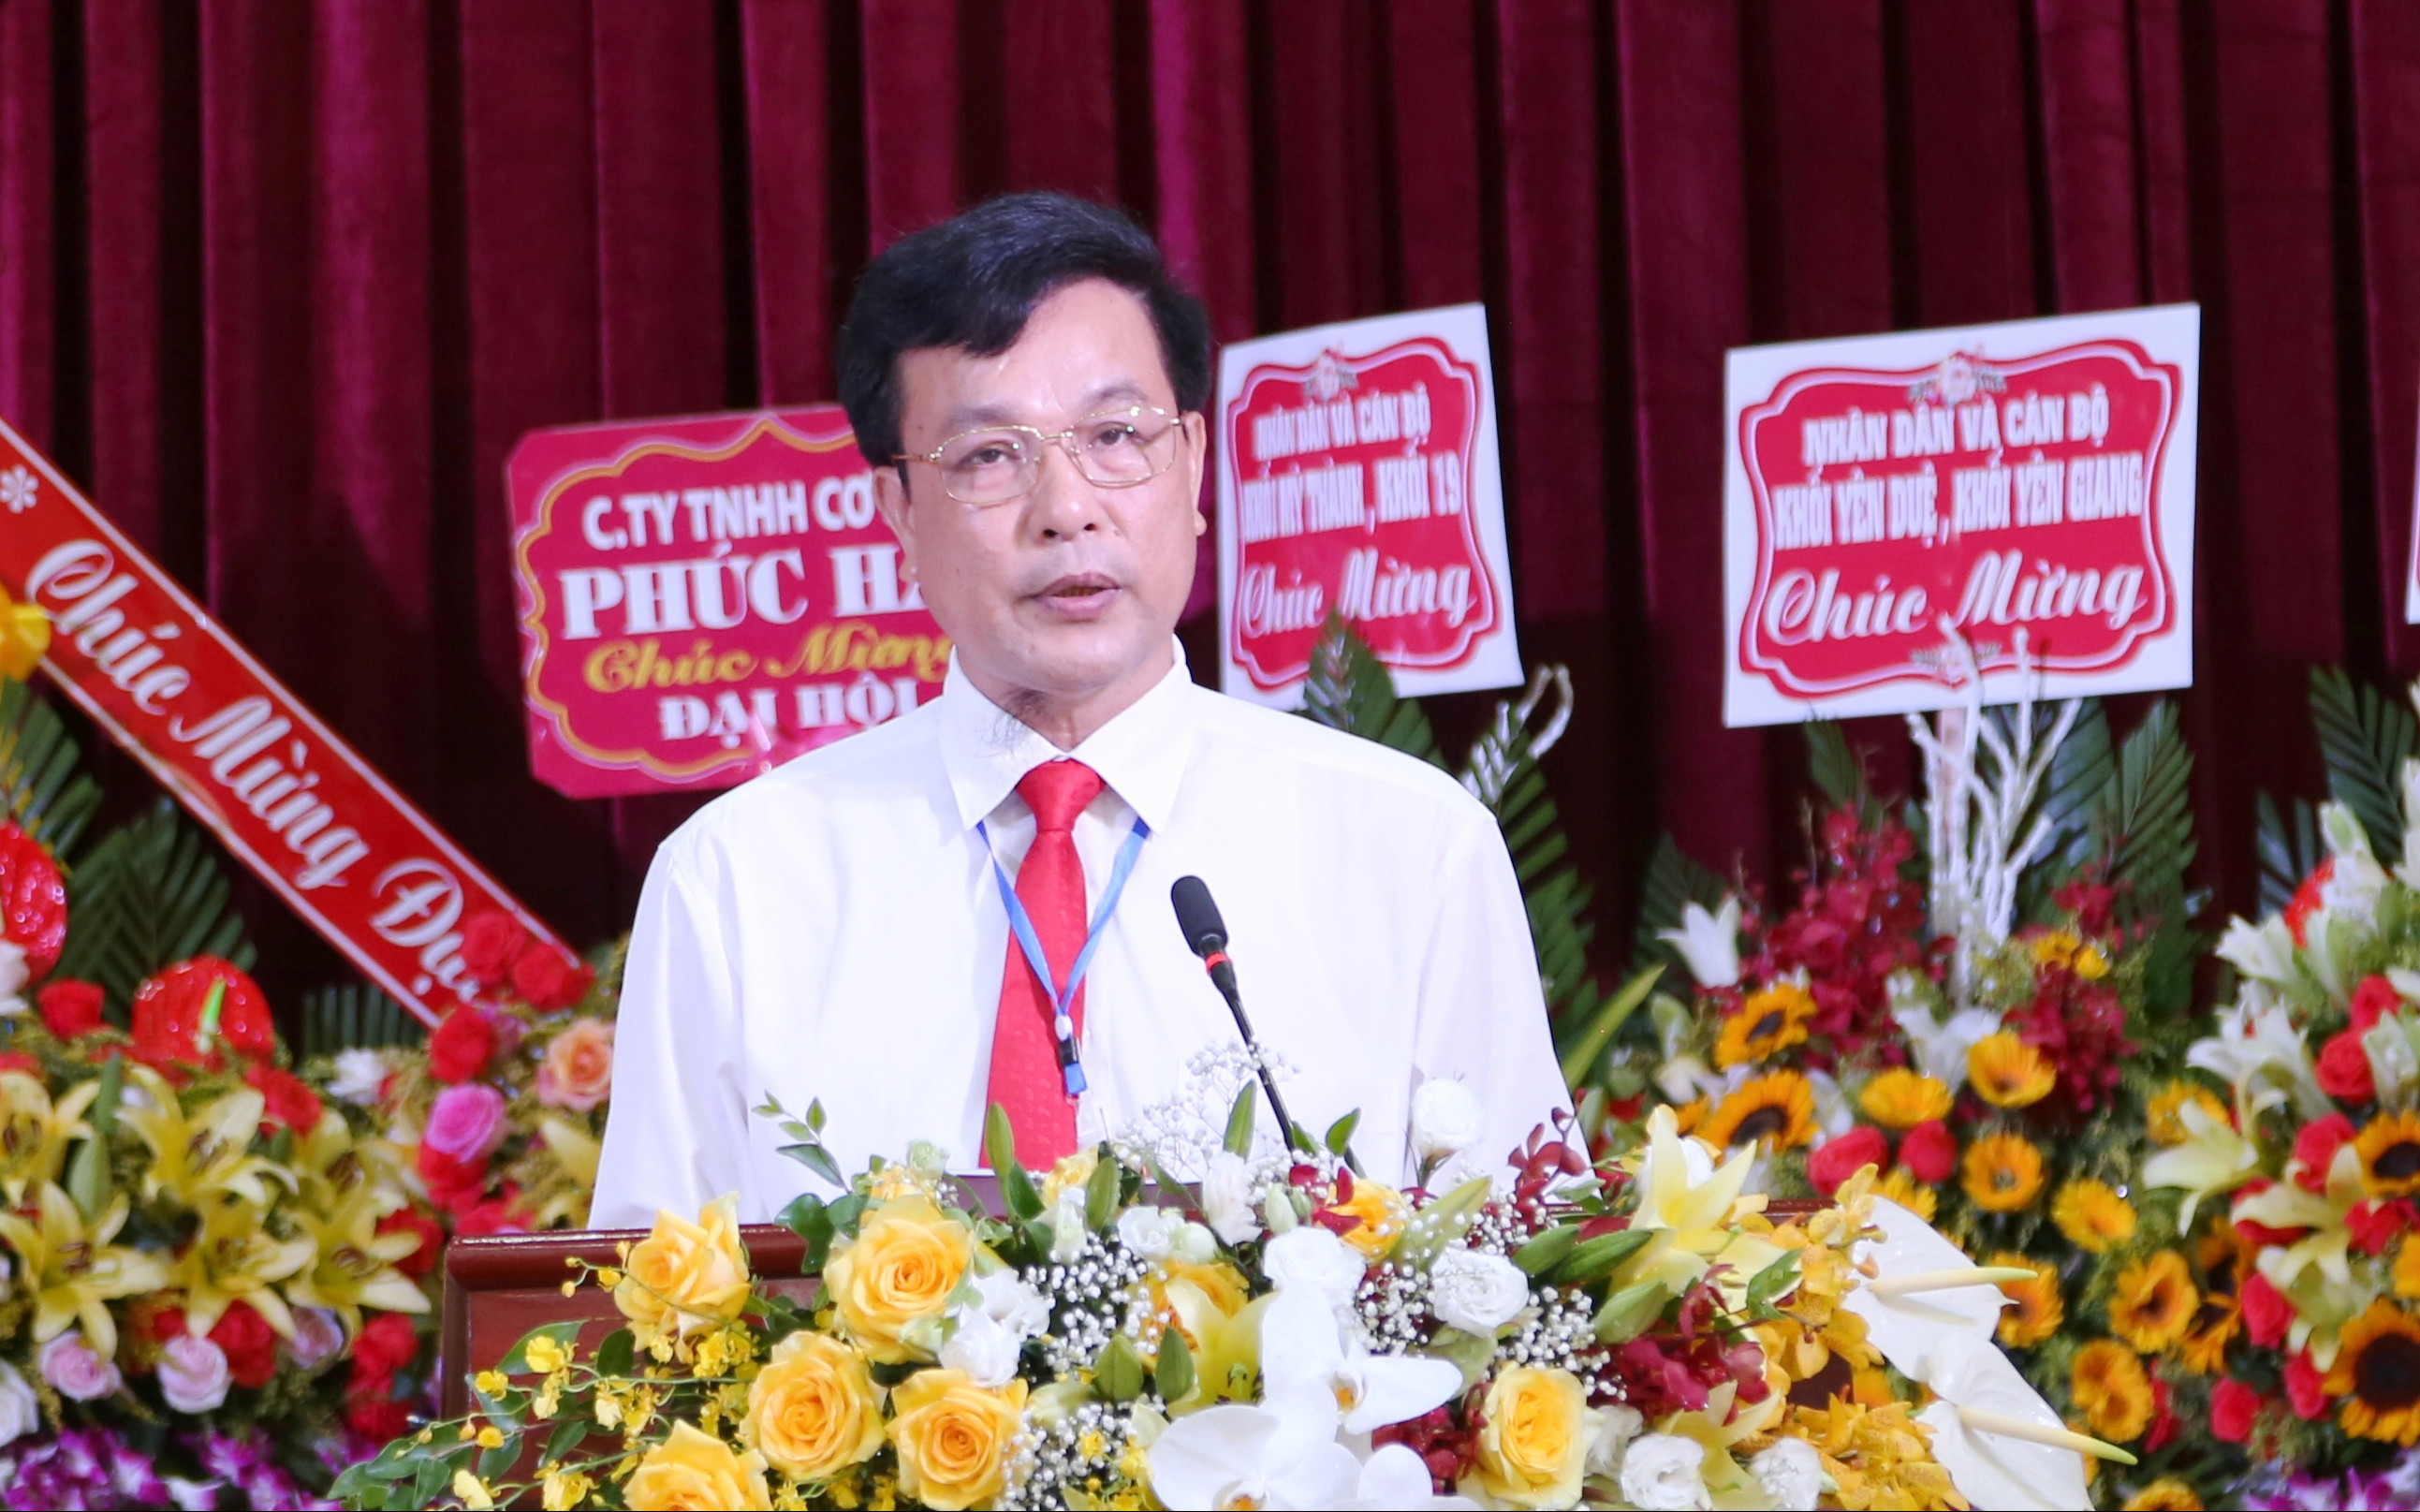 Đồng chí Cao Văn Toàn - Phó Bí thư Đảng ủy, Chủ tịch UBND phường Đông Vĩnh trình bày báo cáo chính trị tại đại hội. Ảnh: Thanh Lê